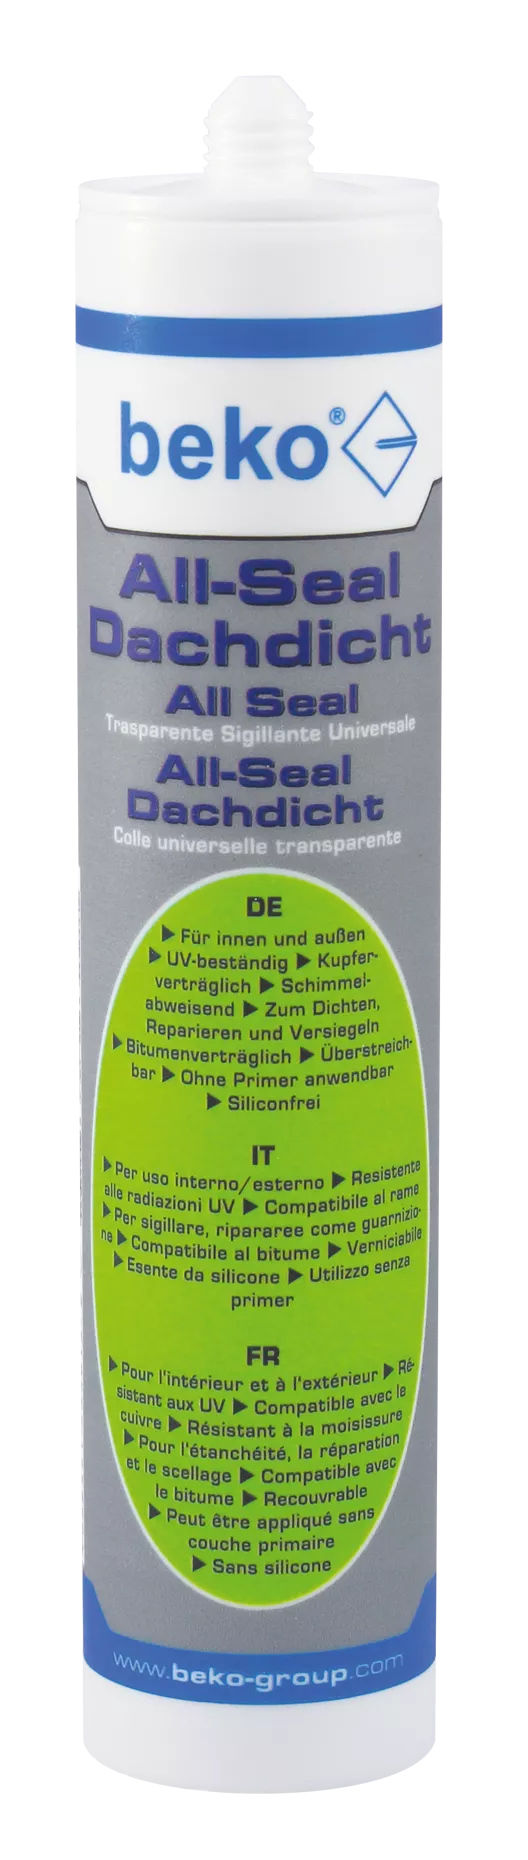 beko All-Seal Dachdicht 300 ml transparent